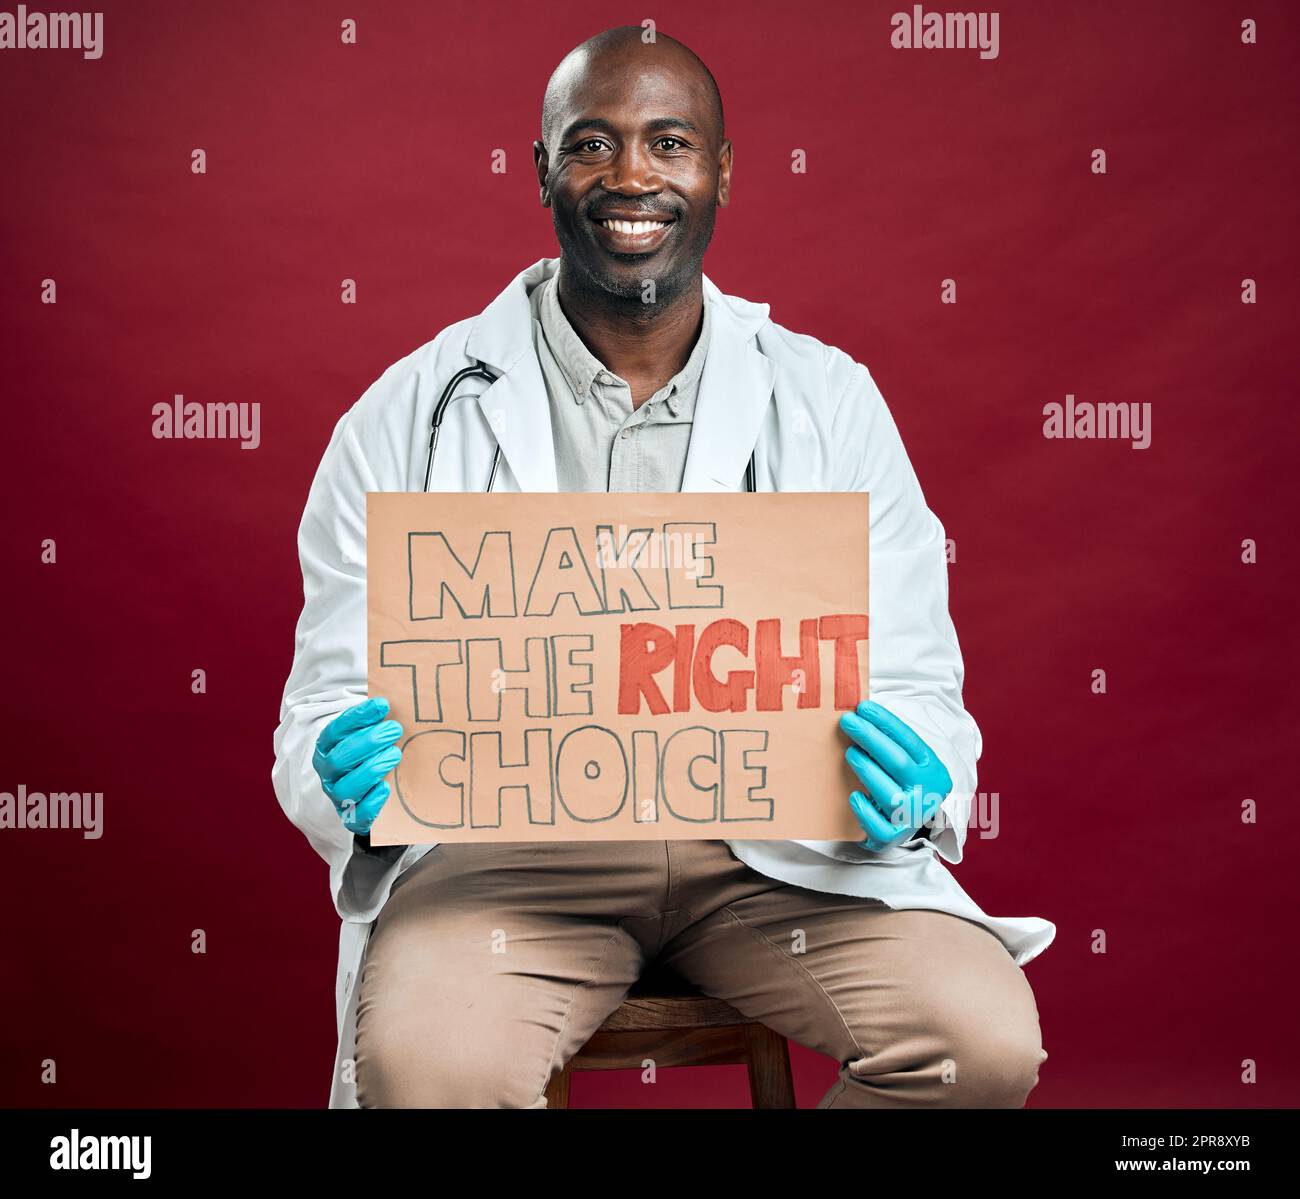 Un médecin afro-américain covid tient et montre une affiche. Portrait d'un médecin noir souriant isolé sur fond rouge studio avec copyspace. Homme faisant la promotion et encourageant le vaccin corona en signe Banque D'Images